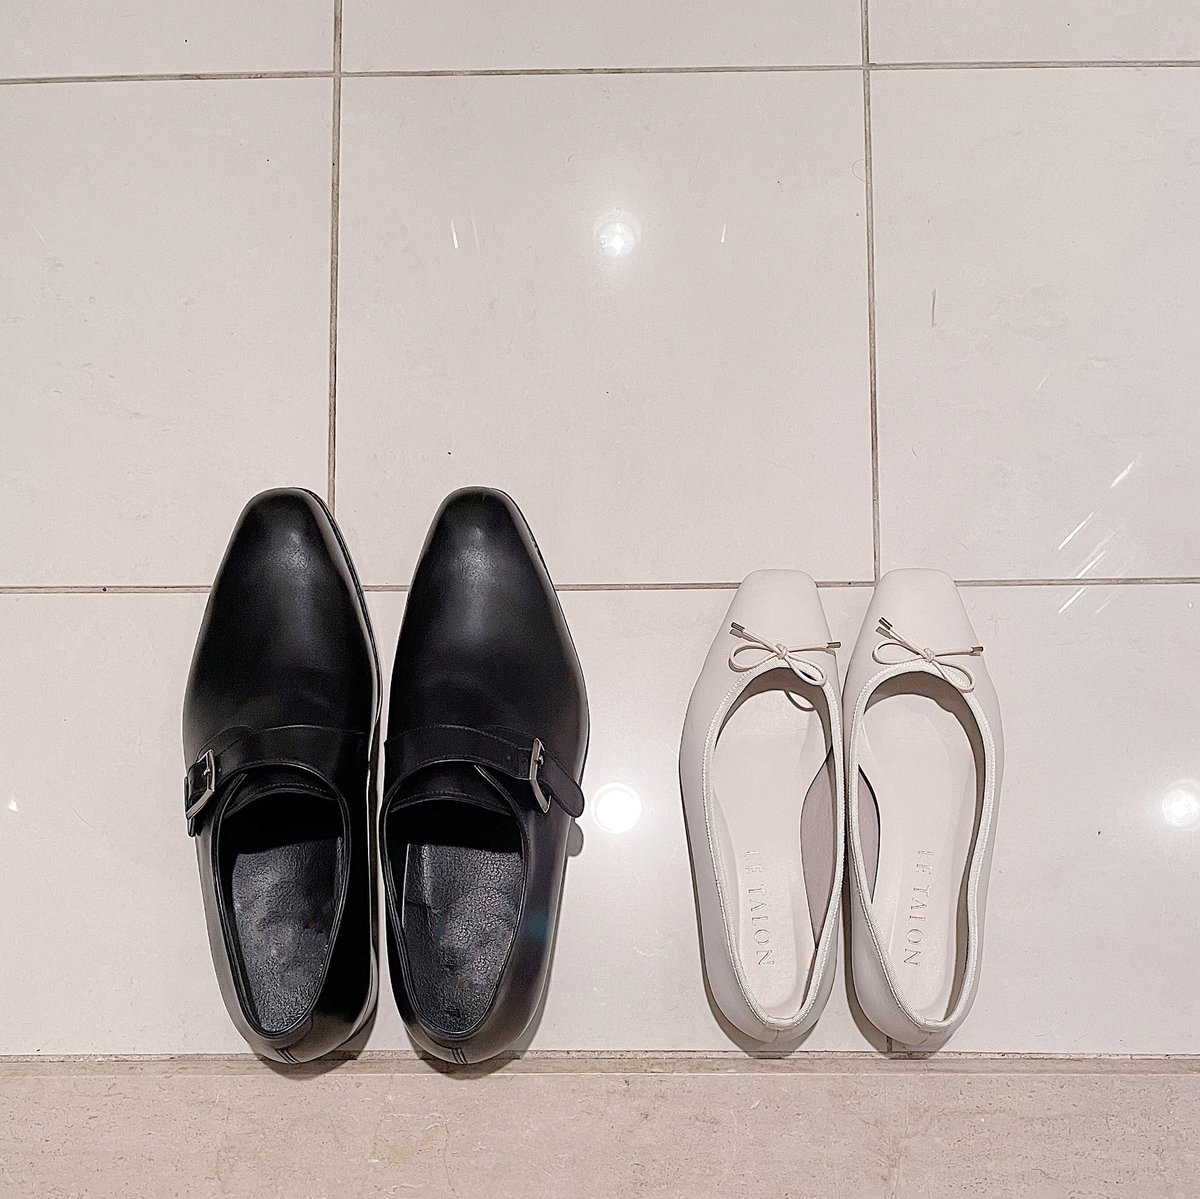 shoes no humans black footwear tiles still life tile wall tile floor  illustration images